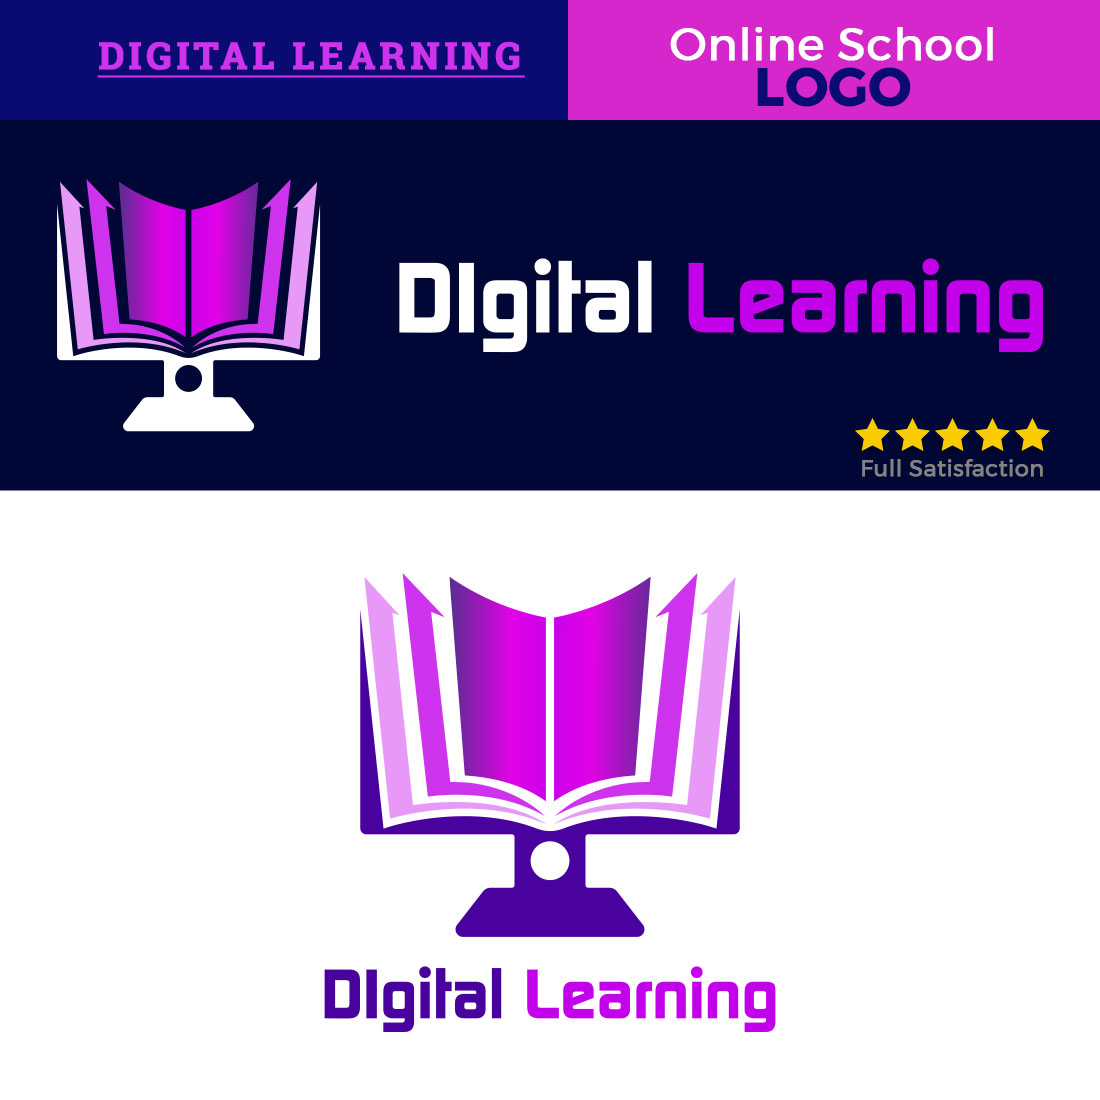 Digital Learning Ebook Logo Design cover image.